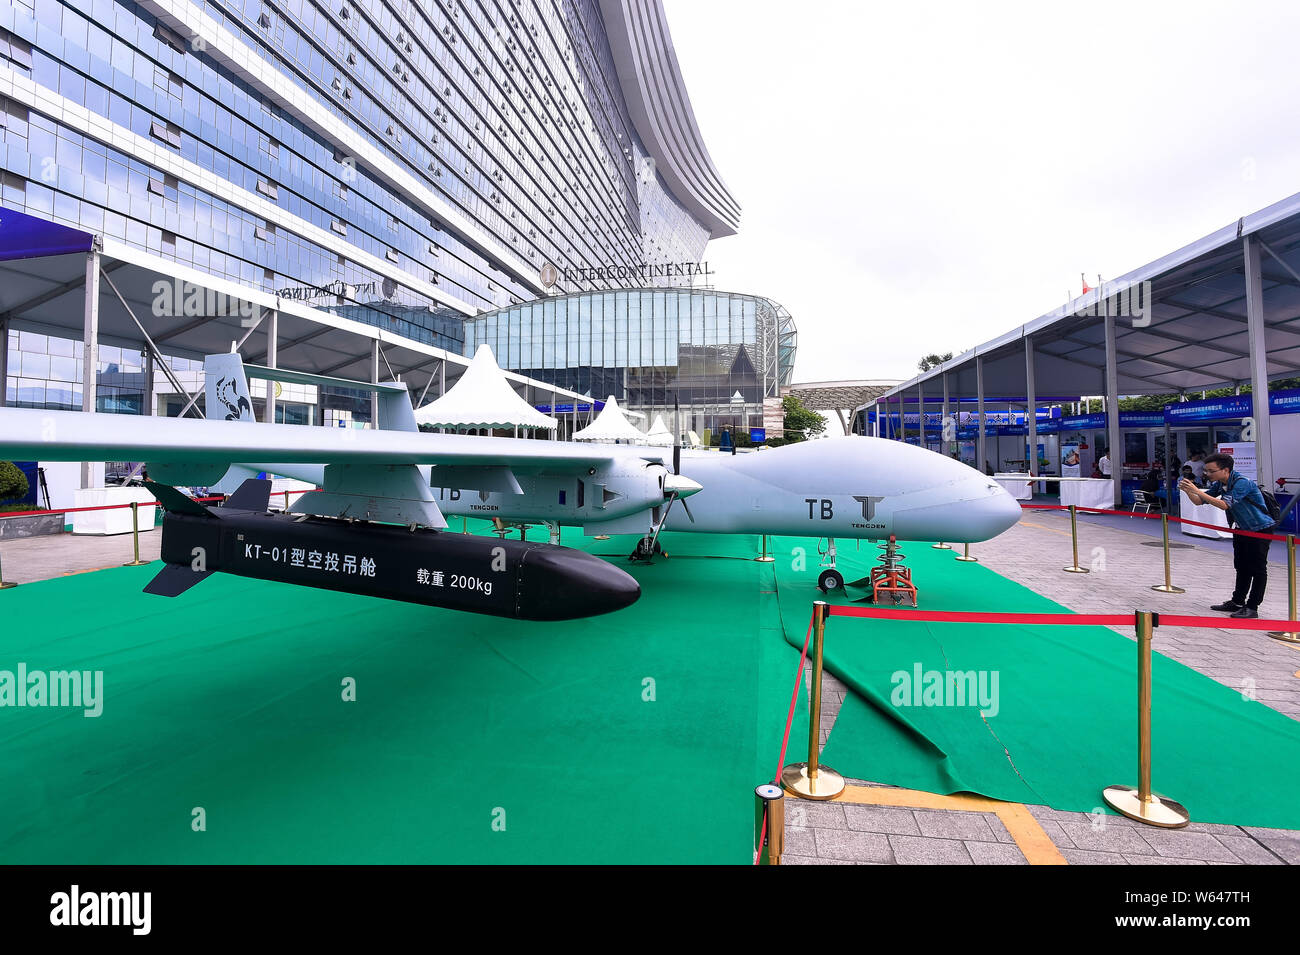 Le bimoteur, double-queue drone d'attaque d'Tengoen La Technologie est sur  l'affichage à l'exposition de la Conférence mondiale en 2018 Drone Chengdu  city, sout Photo Stock - Alamy